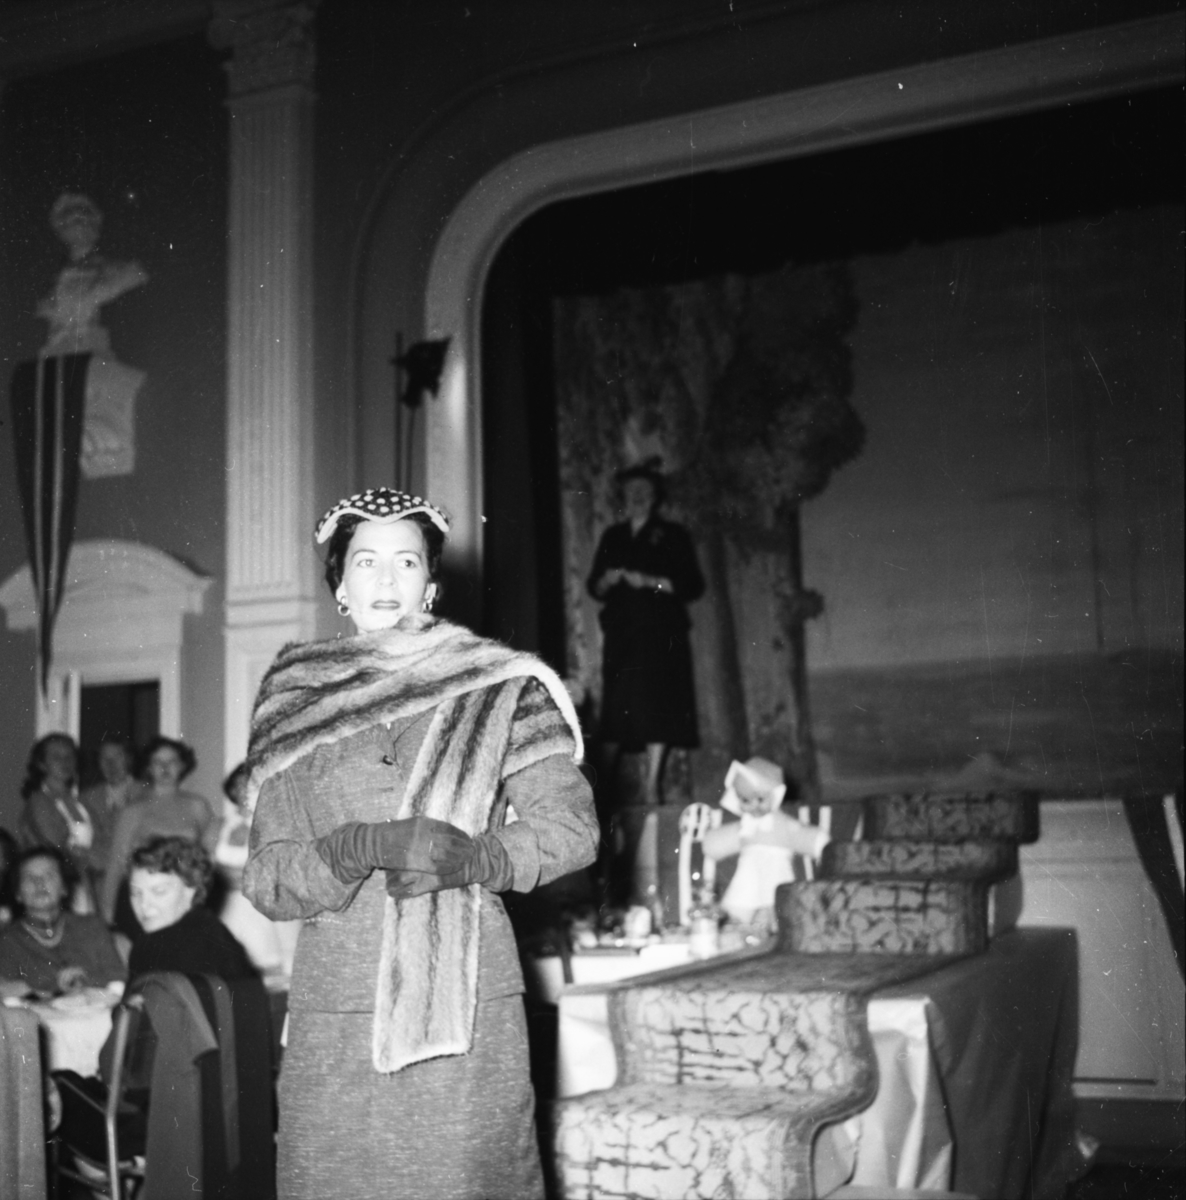 Vardens arkiv. "Mannequin-oppvisning i Festiviteten" 23.04.1954